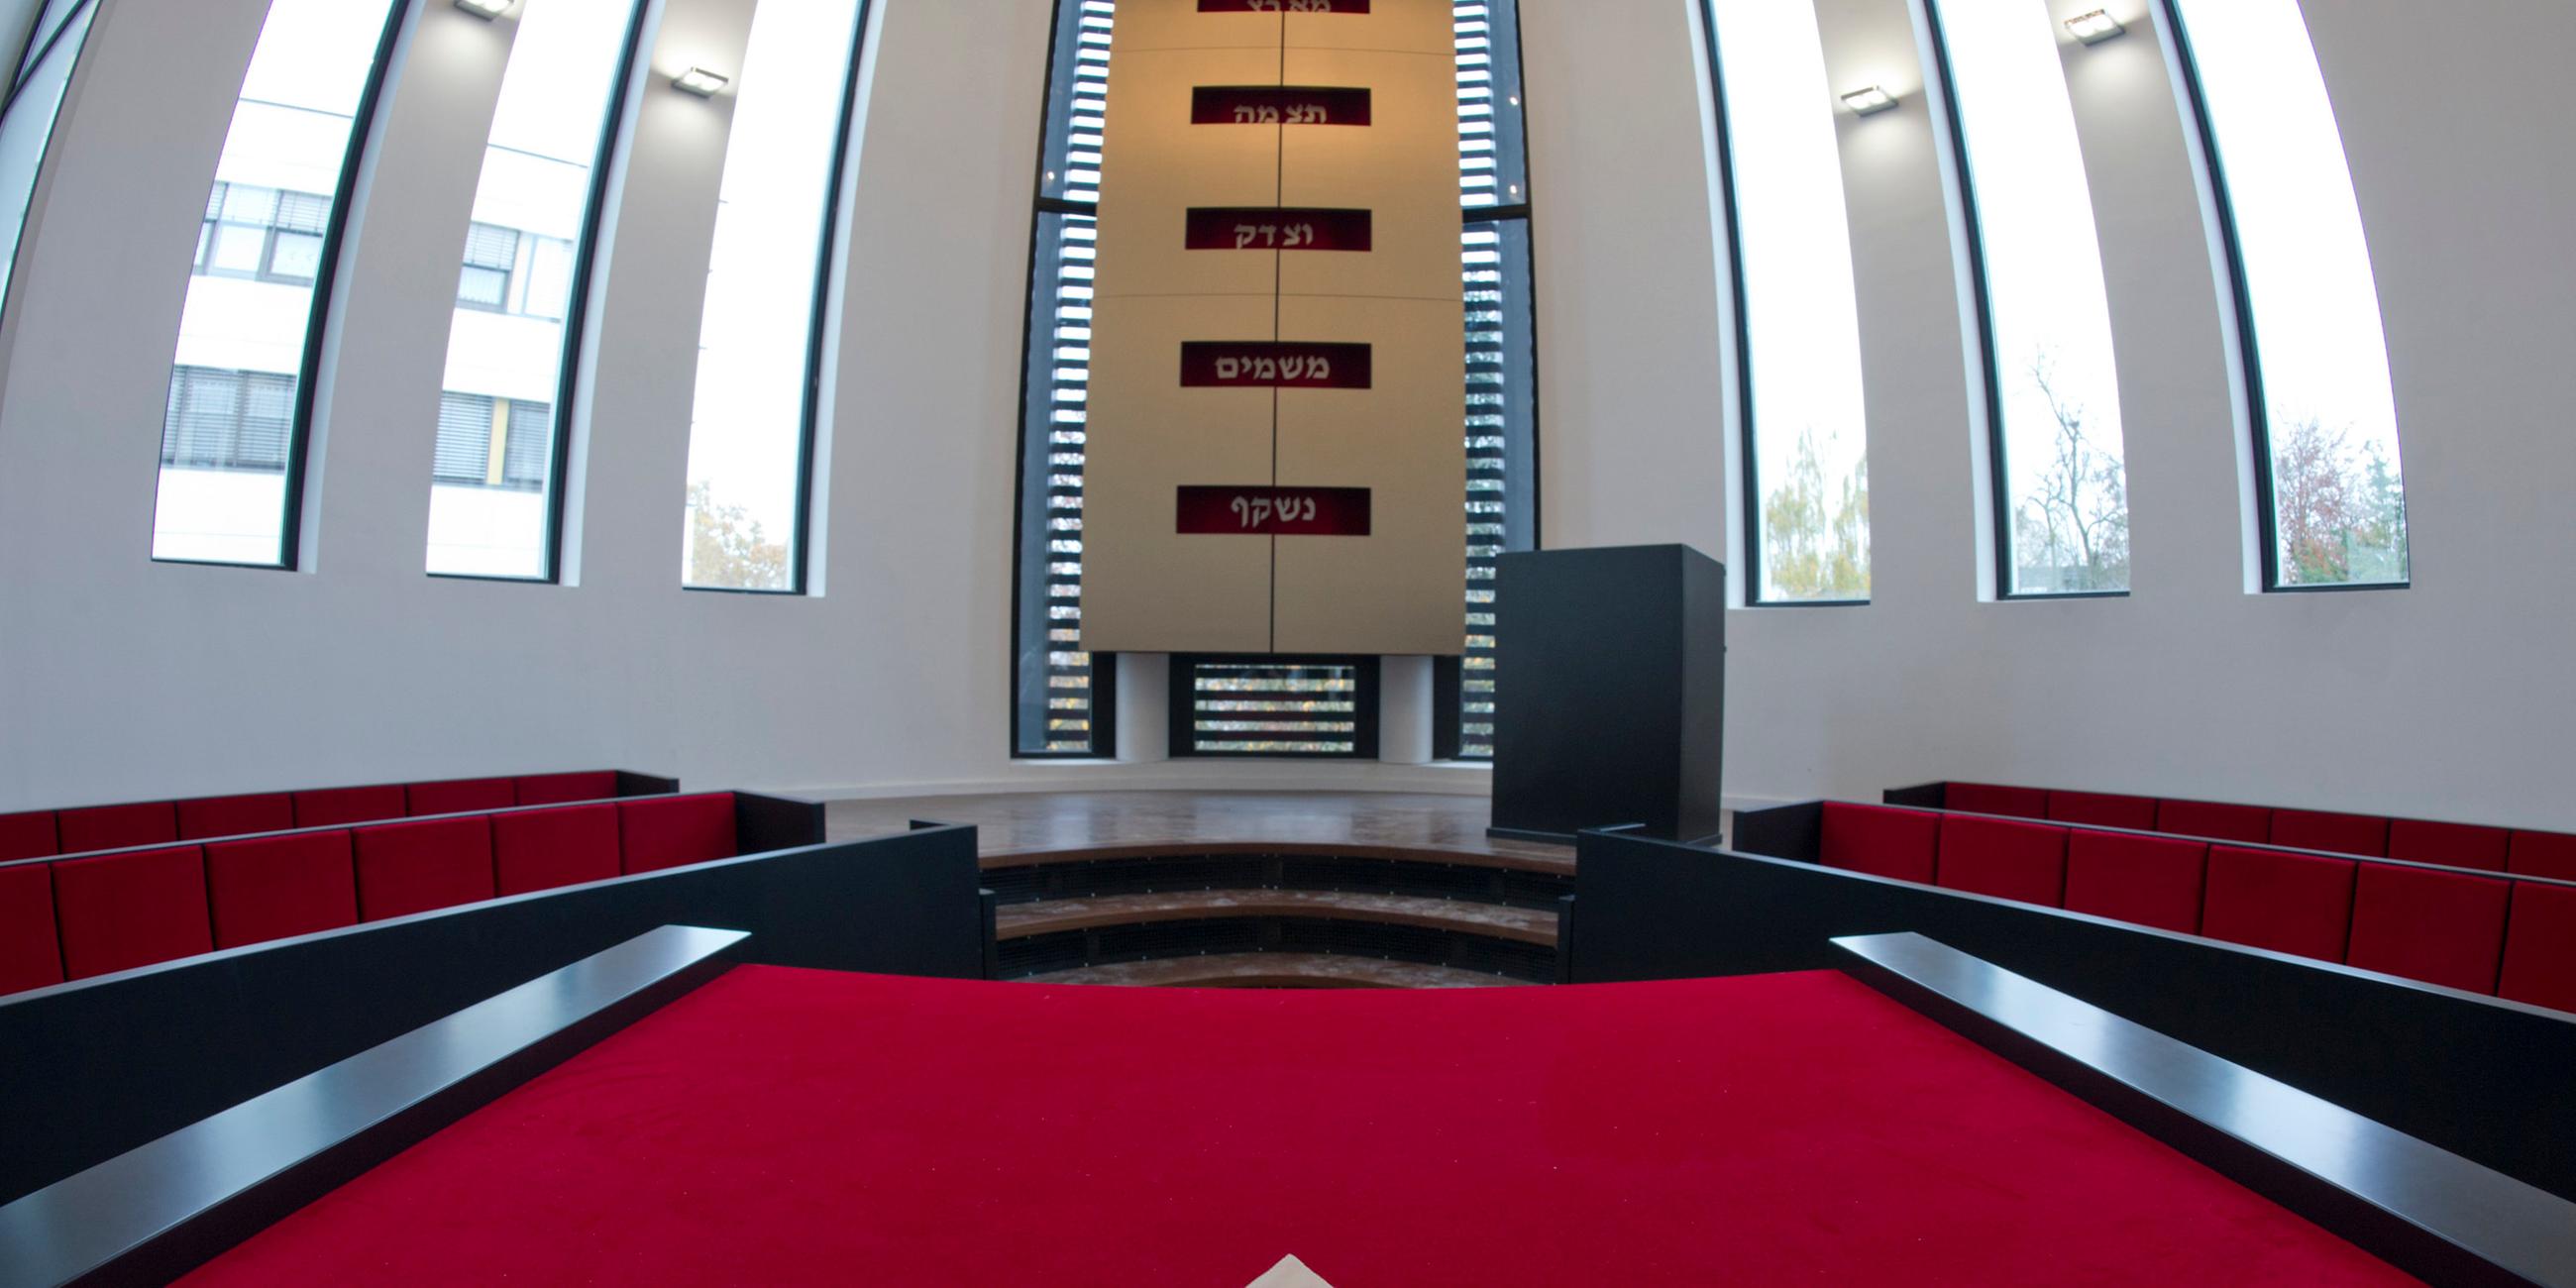 Ein Teil der Synagoge in Speyer ist abgebildet mit rotem Teppich und großen Fenstern.